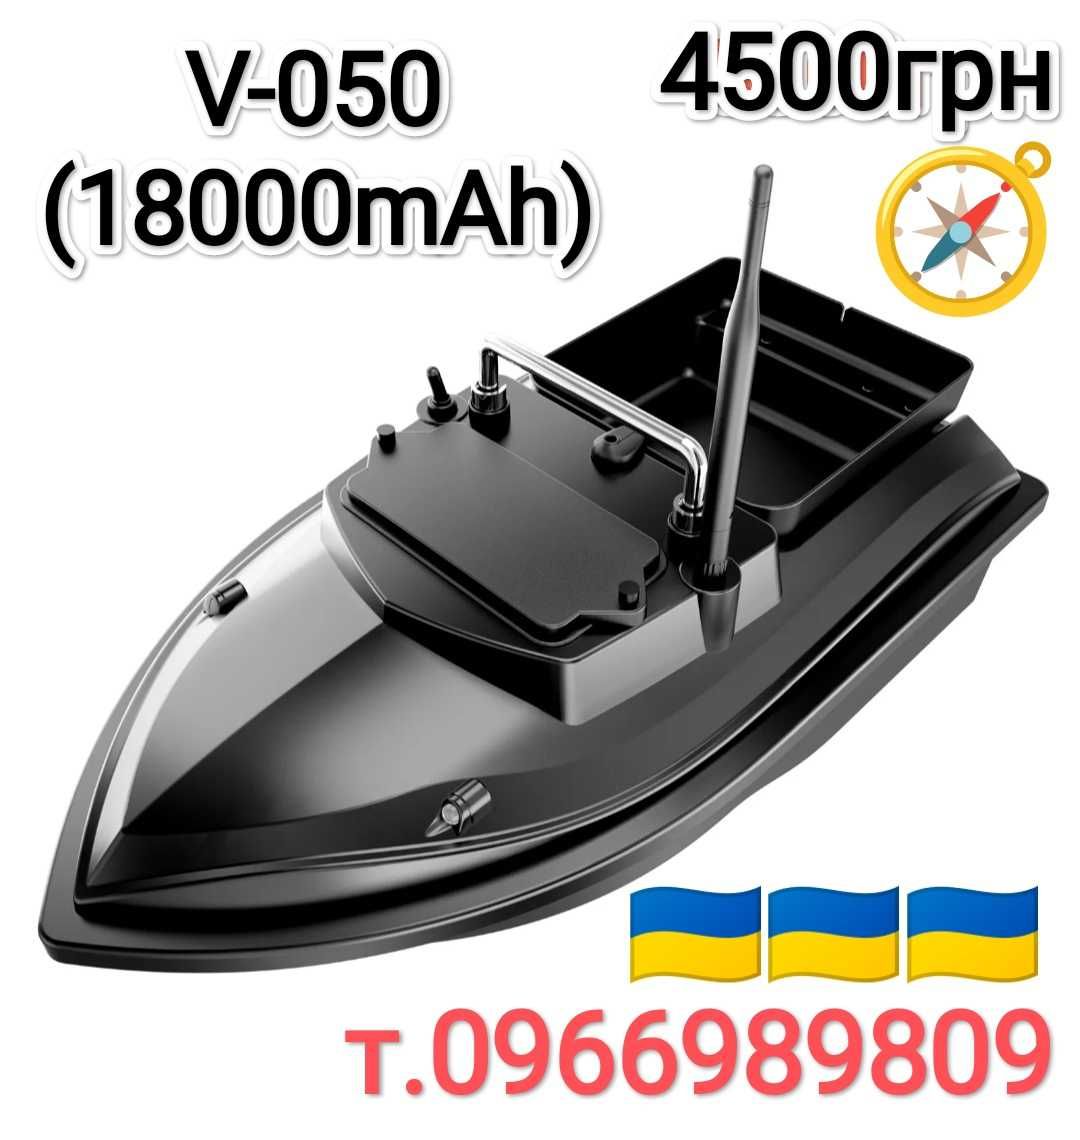 Кораблик V-020,V-050,V-801, D-19 для прикормки